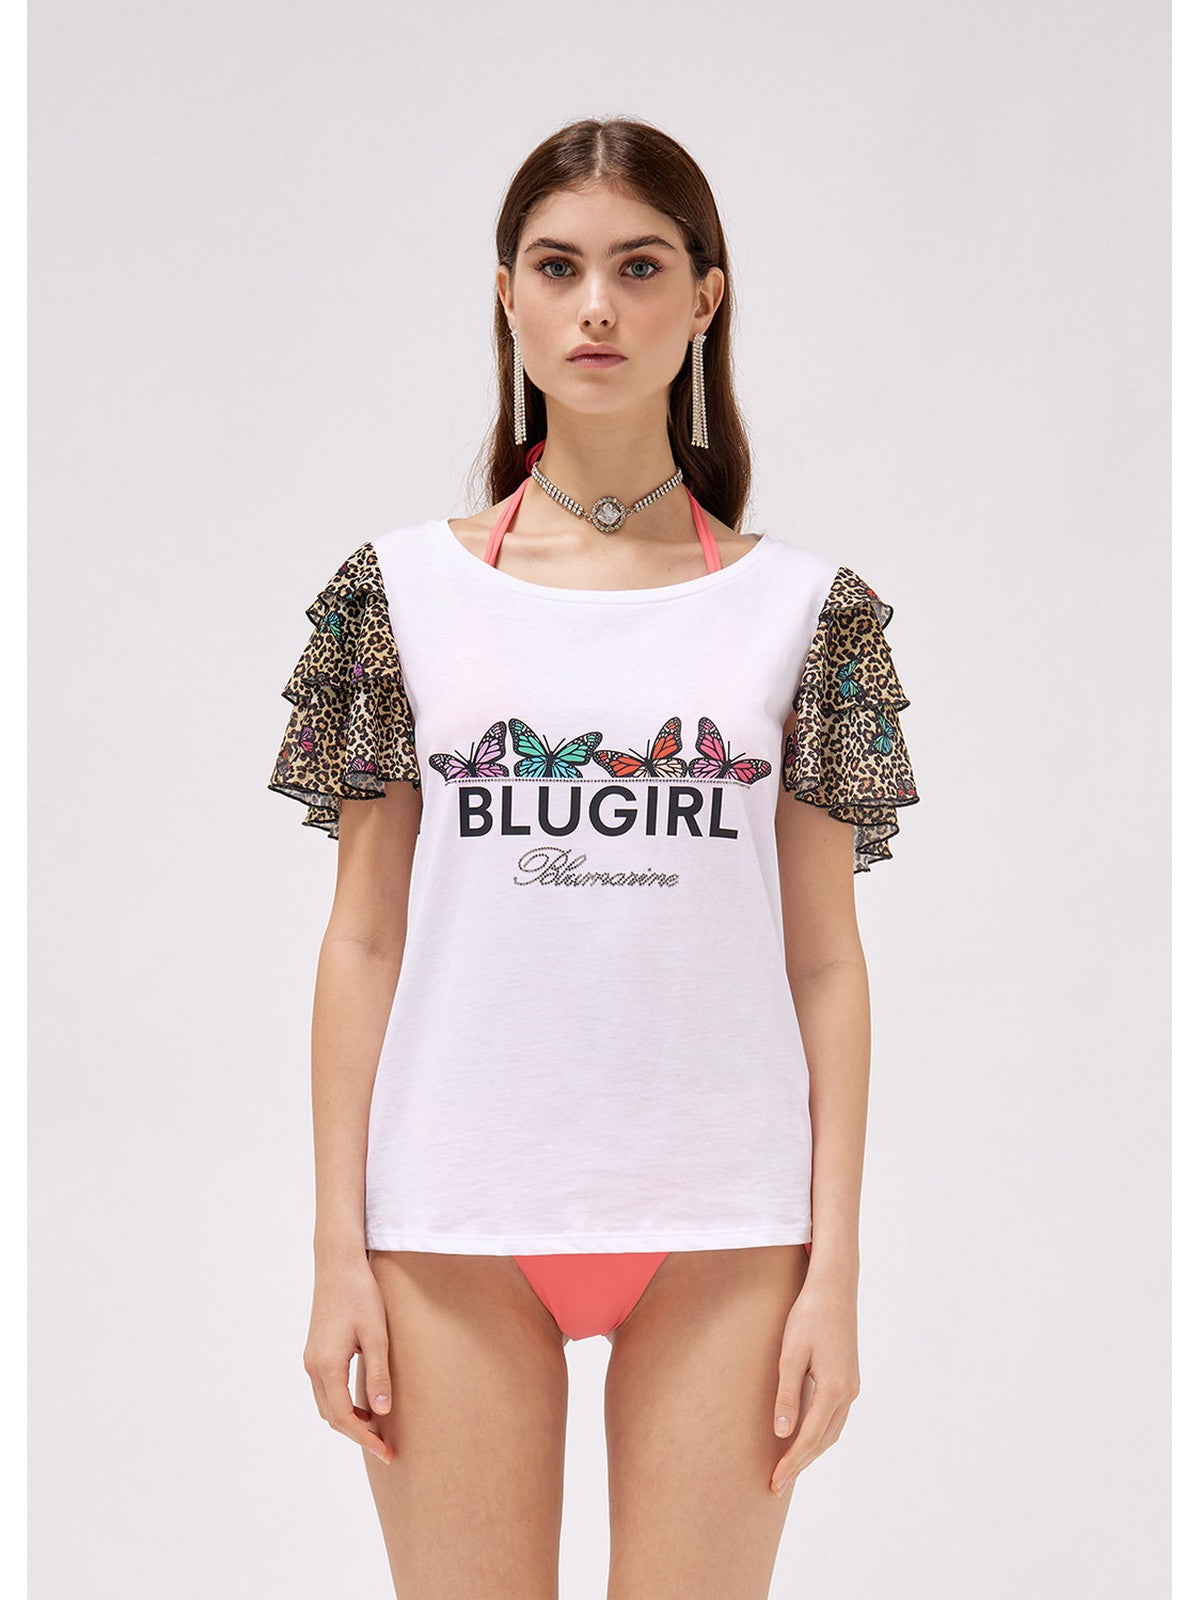 BLUGIRL BEACHWEAR T-Shirt e Polo Donna  FA3096J5923 S9740 Bianco